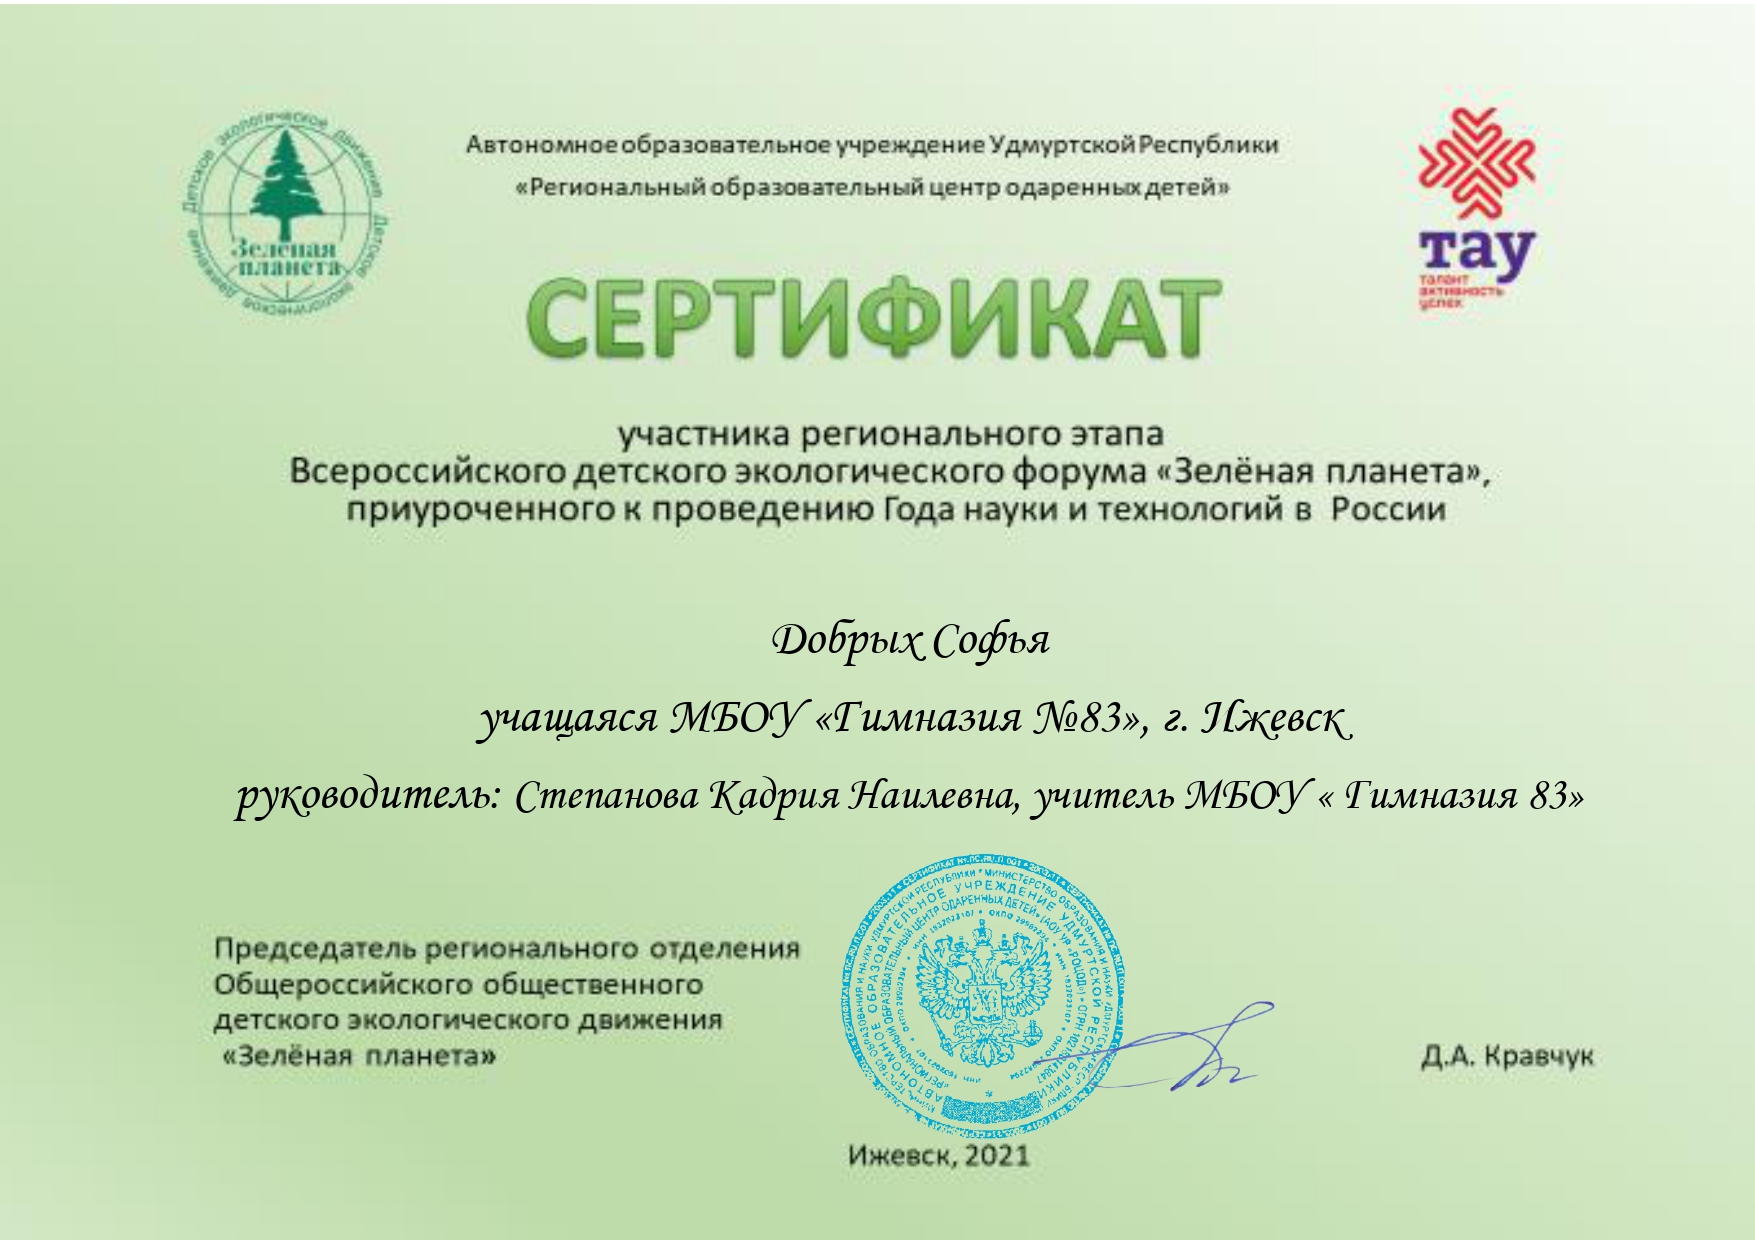 Сертификат участника регионального Всероссийского детского экологического форума "Зеленая планета"